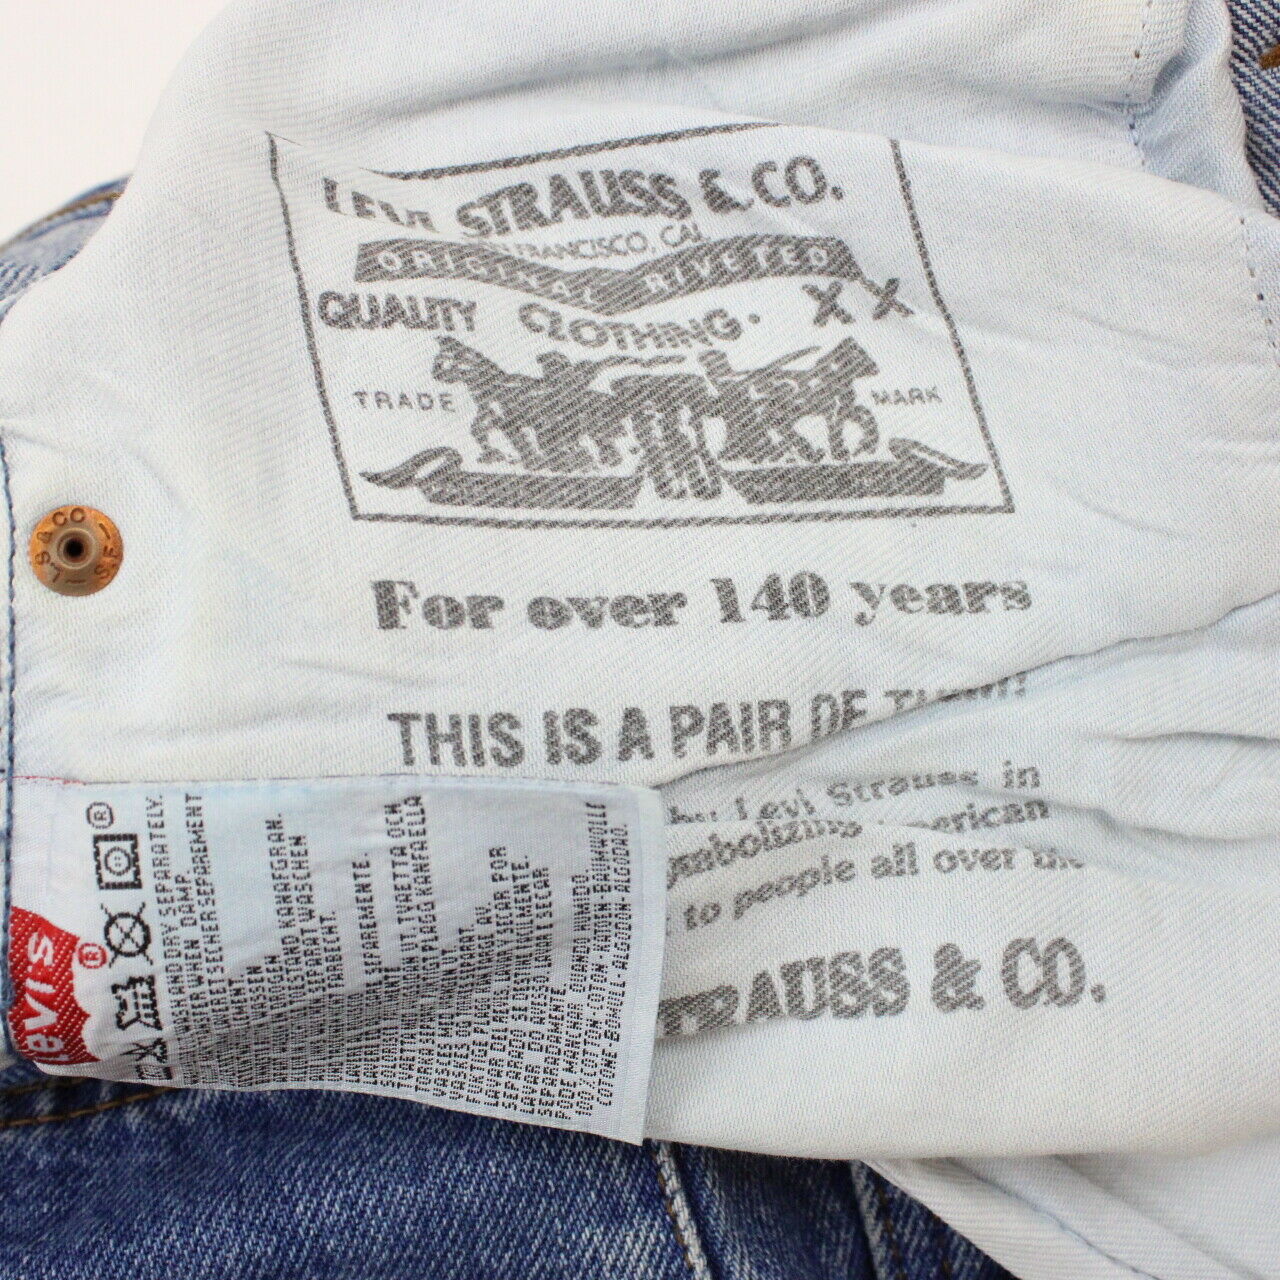 90s LEVIS 501 Jeans Blue | W36 L28